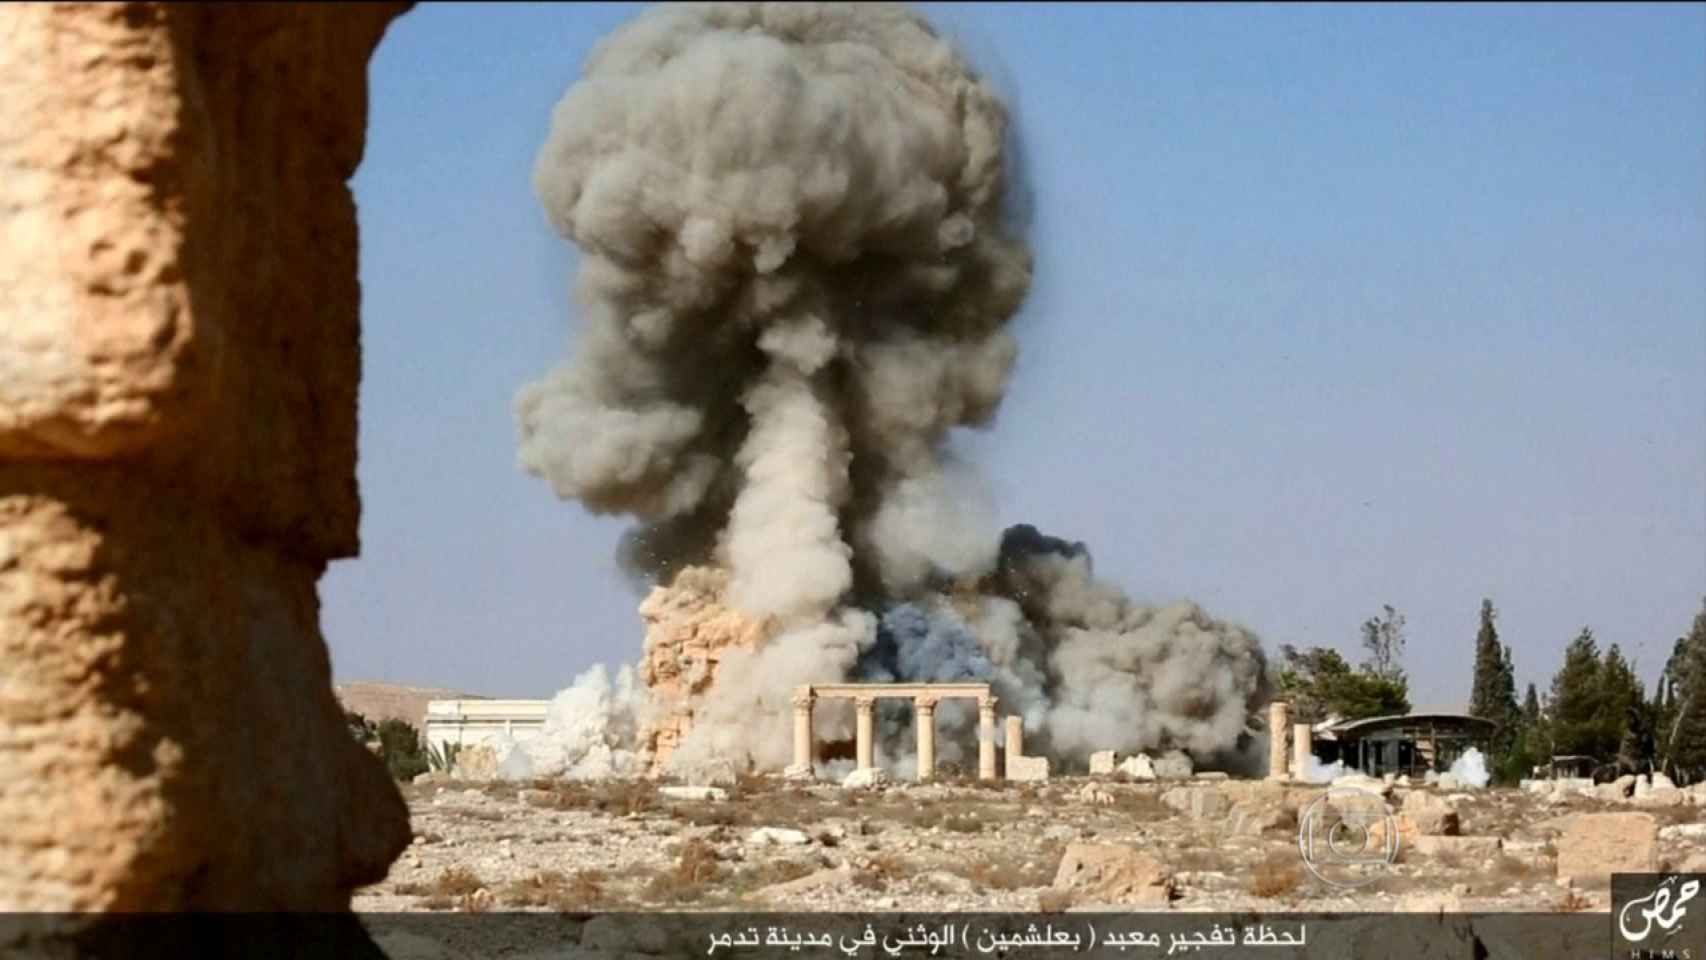 El satélite disecciona el expolio arqueológico sirio